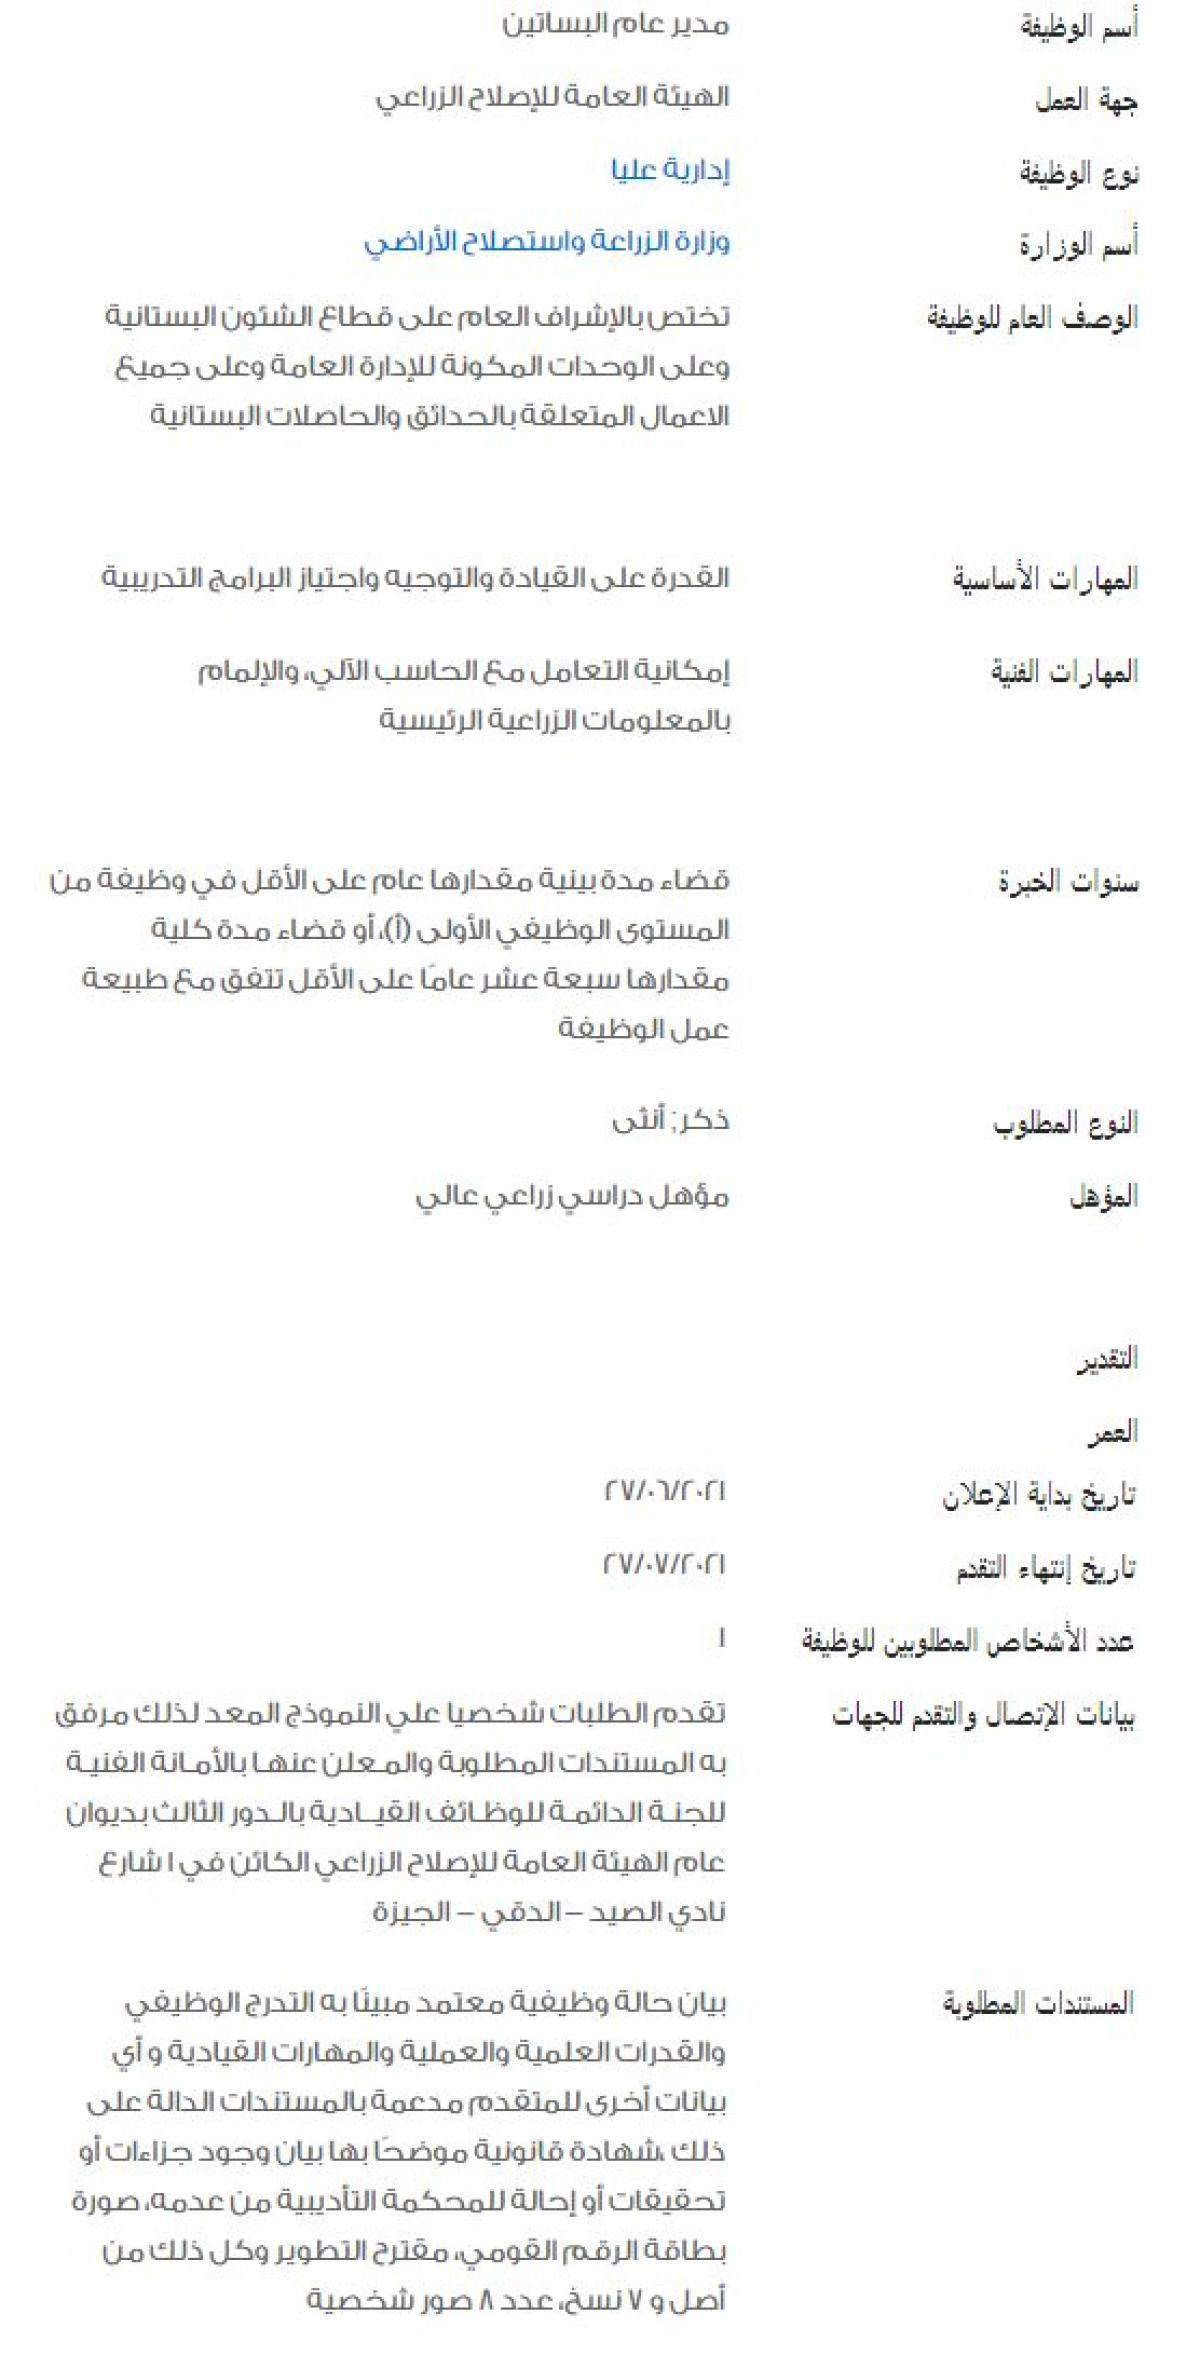 وظائف الحكومة المصرية لشهر يوليو 2021 وظائف بوابة الحكومة المصرية